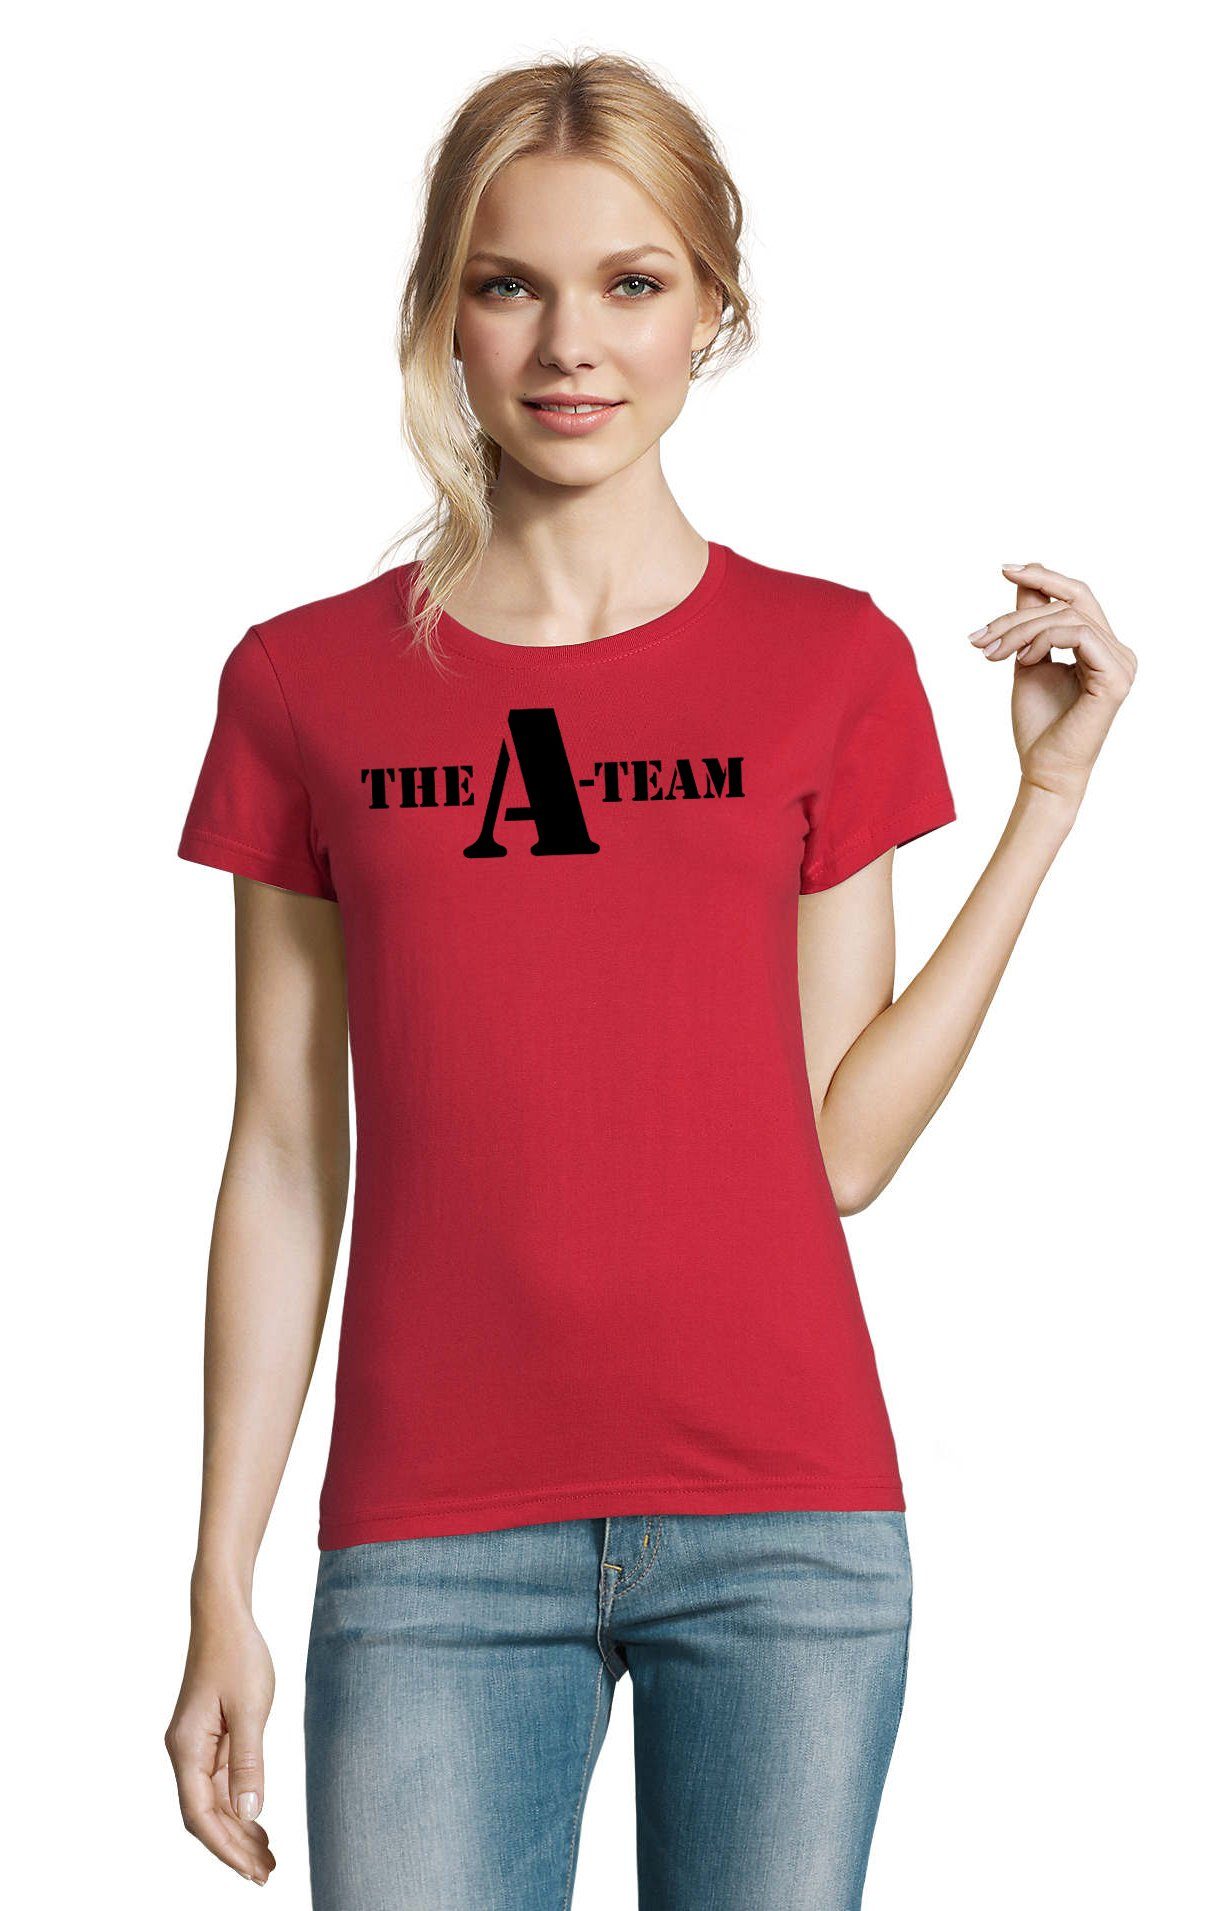 Blondie & Brownie T-Shirt Damen A Team Logo Print Van Bus Murdock Hannibal  Serie